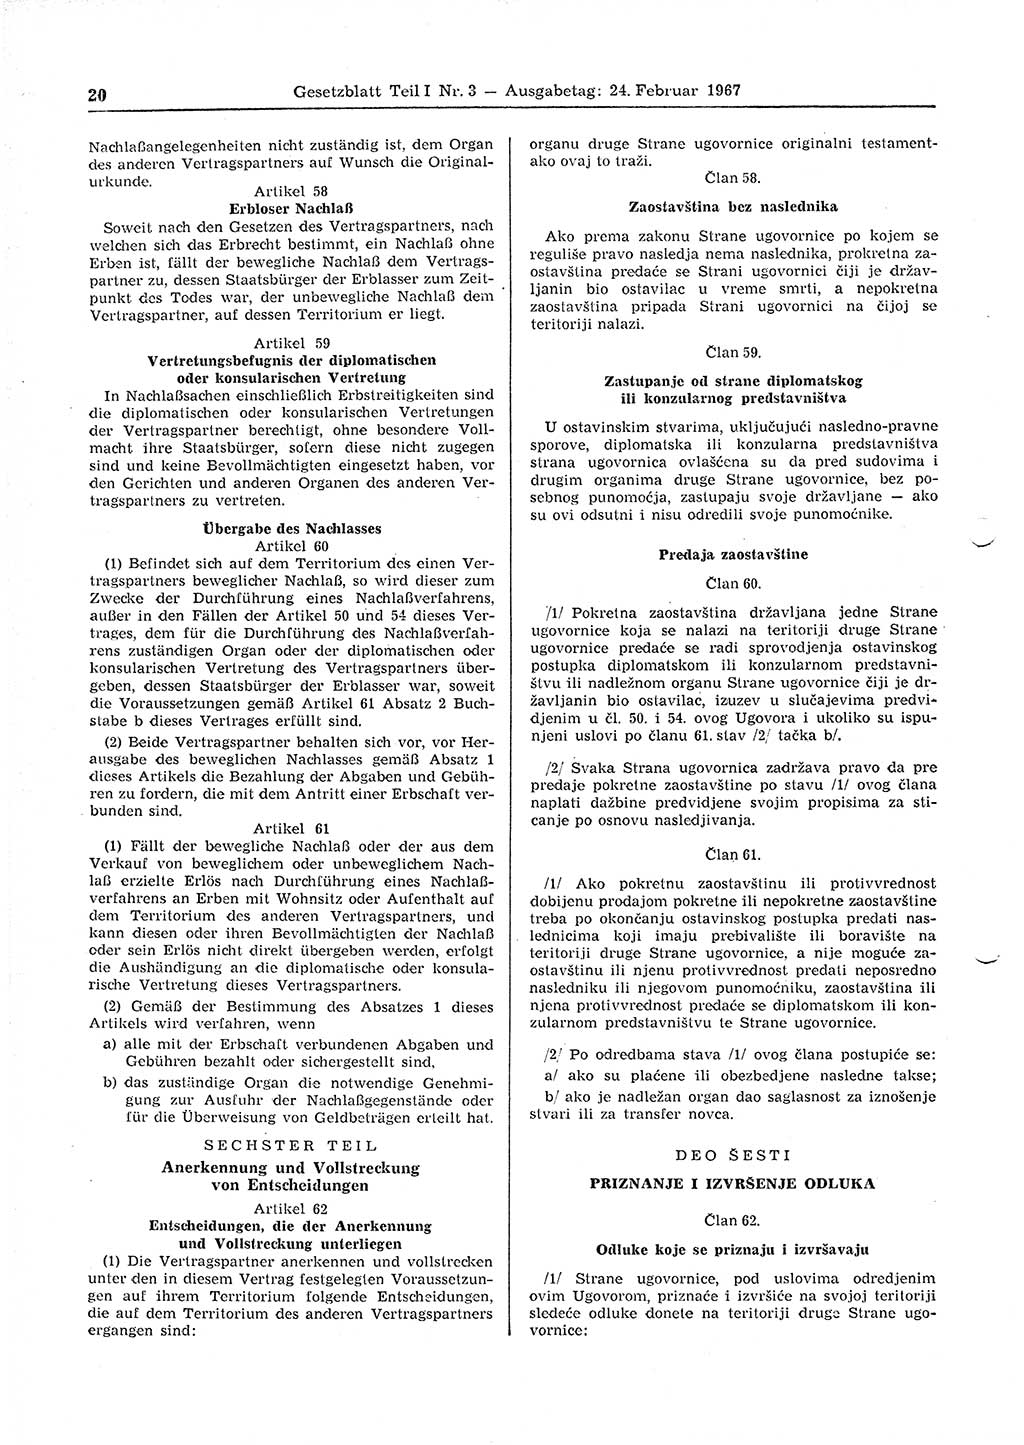 Gesetzblatt (GBl.) der Deutschen Demokratischen Republik (DDR) Teil Ⅰ 1967, Seite 20 (GBl. DDR Ⅰ 1967, S. 20)